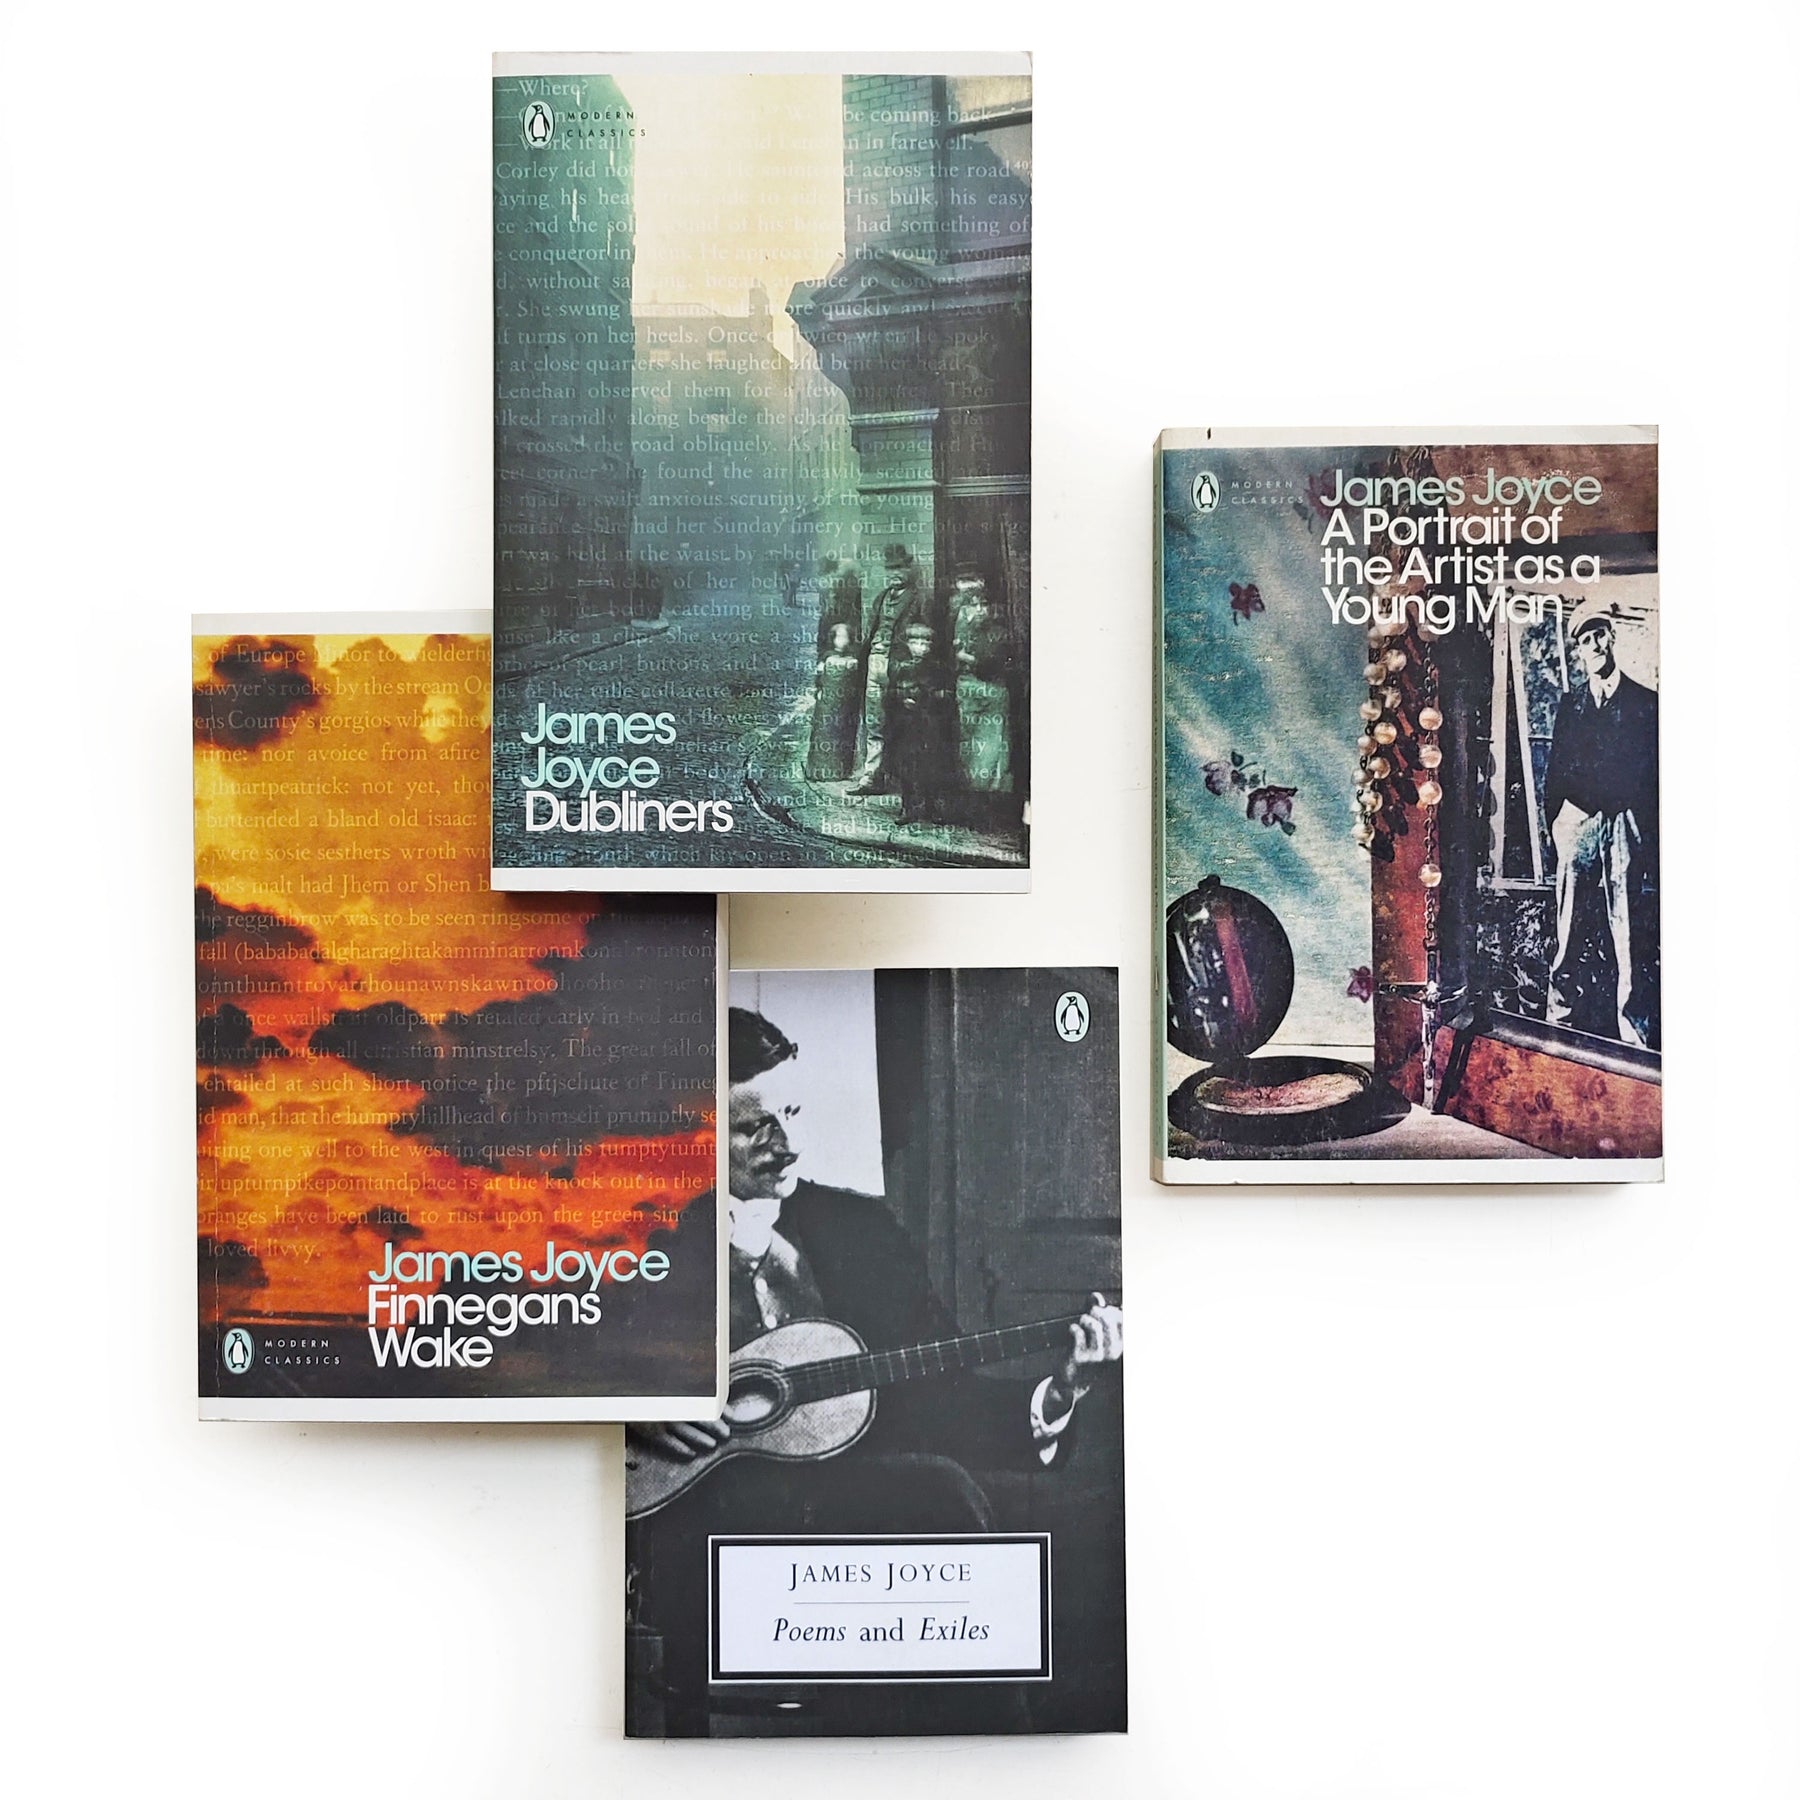 Penguin Orange Classics set – Ikka Dukka - The Eclectic Online Store